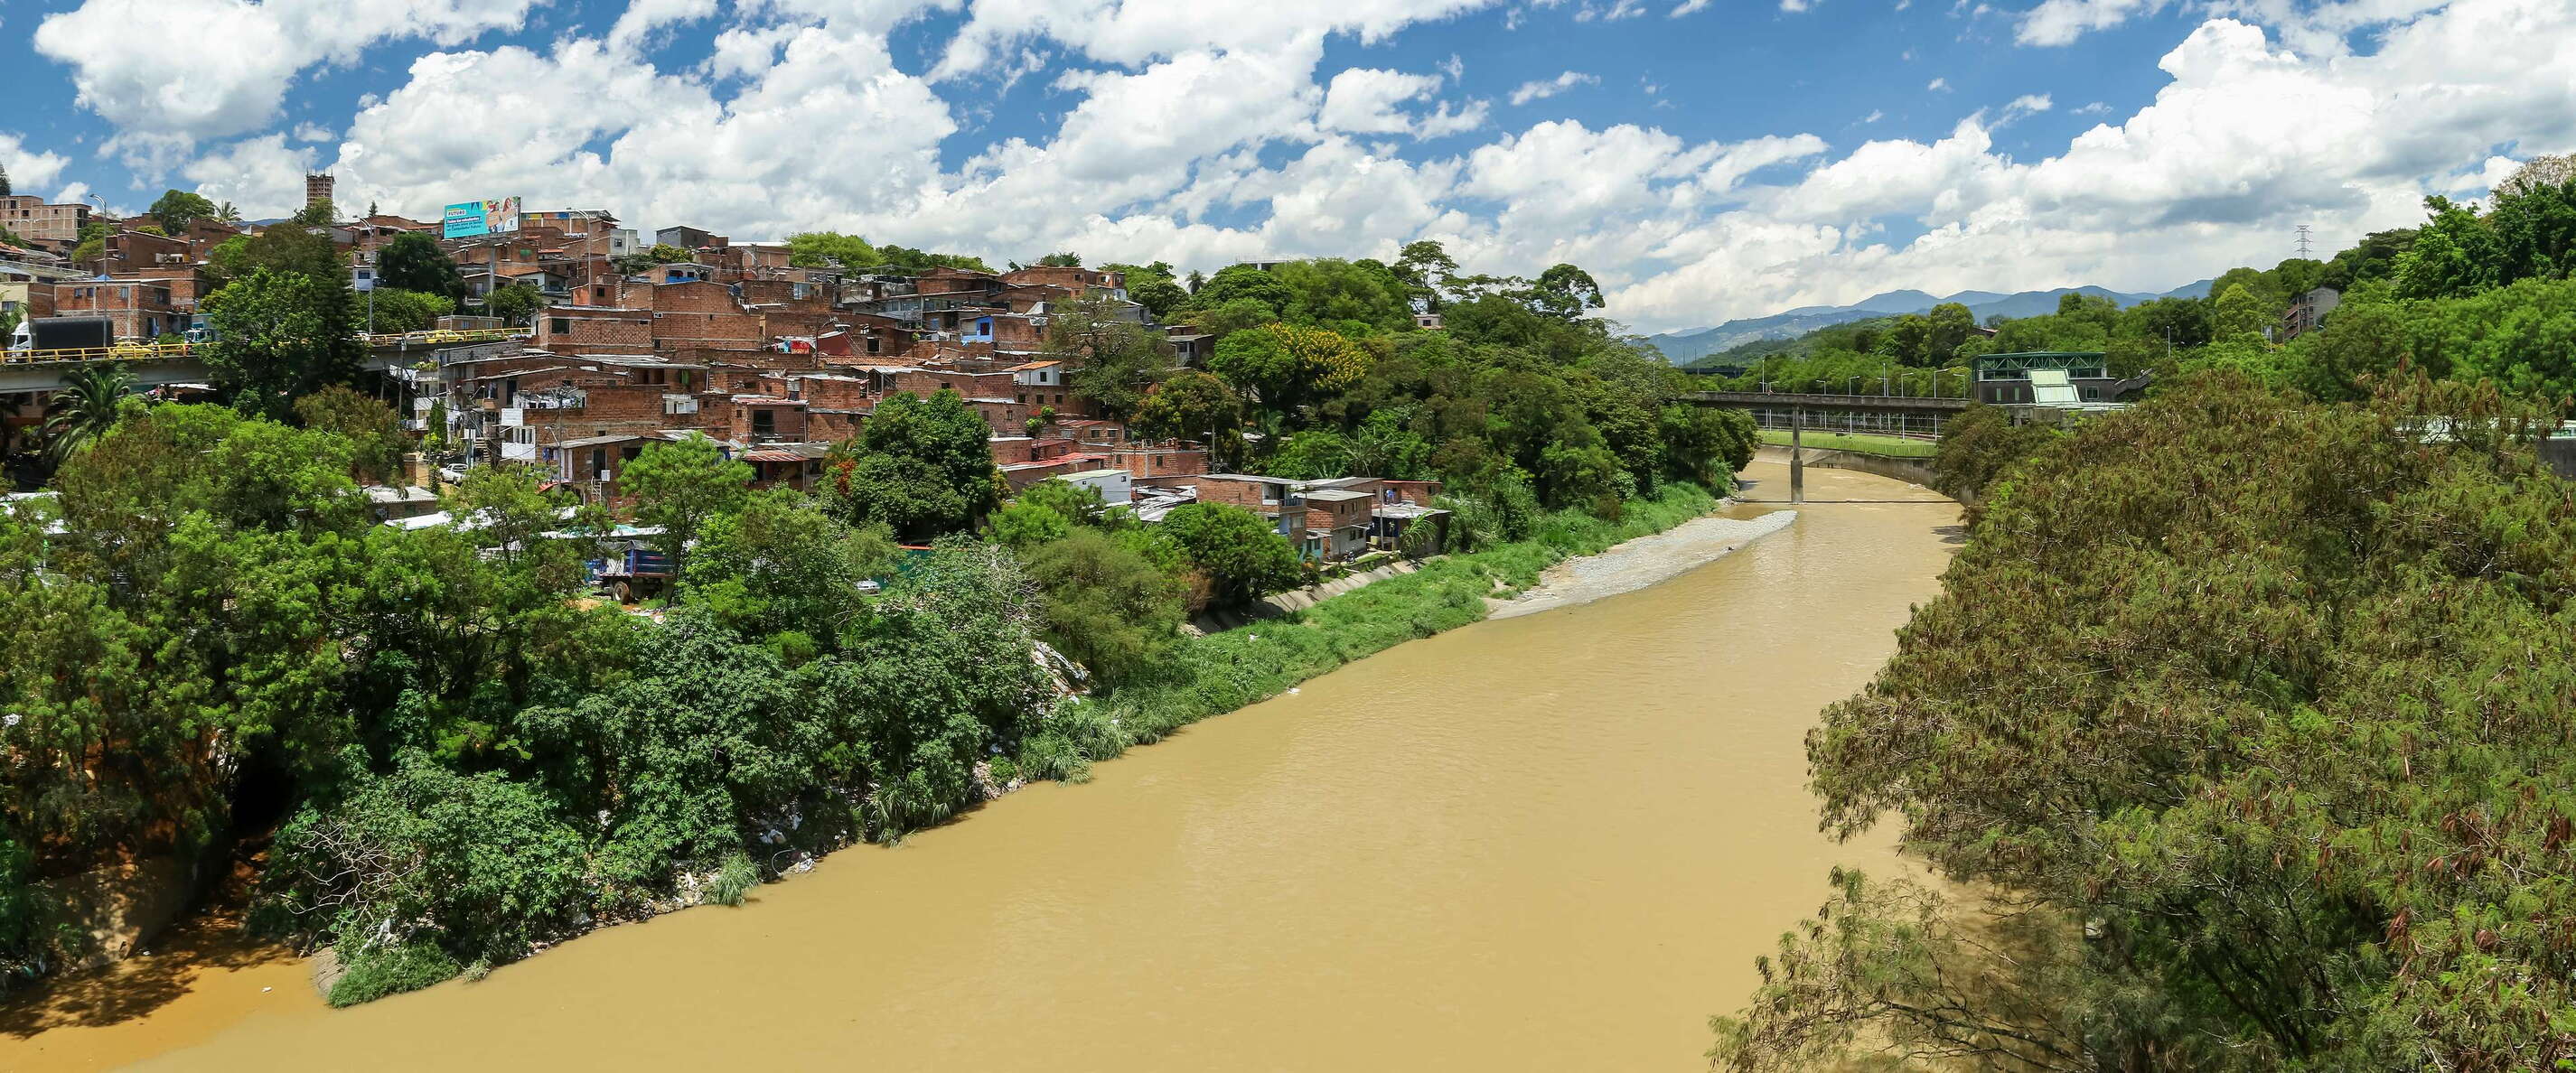 Medellín | Río Medellín and San Isidro